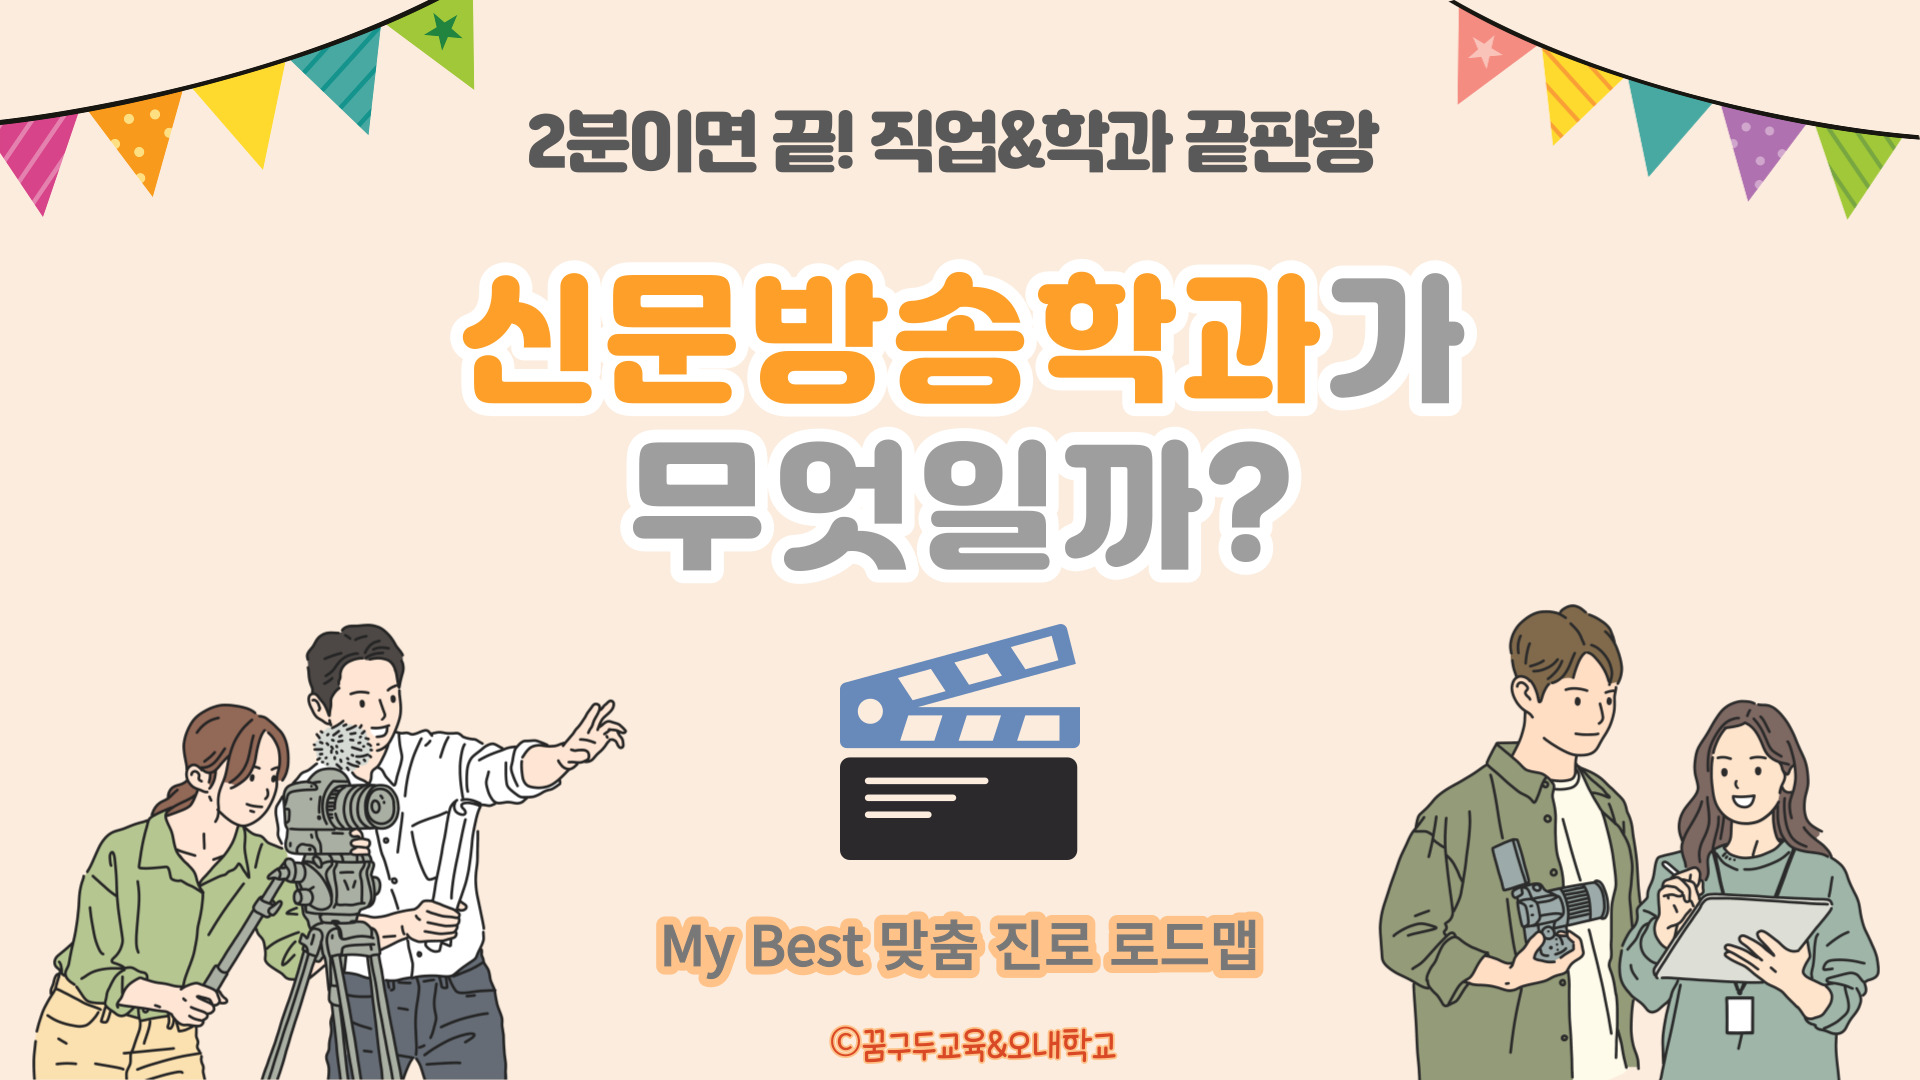 My Best 학과소개 (인문사회계열) 신문방송학과가 무엇일까?